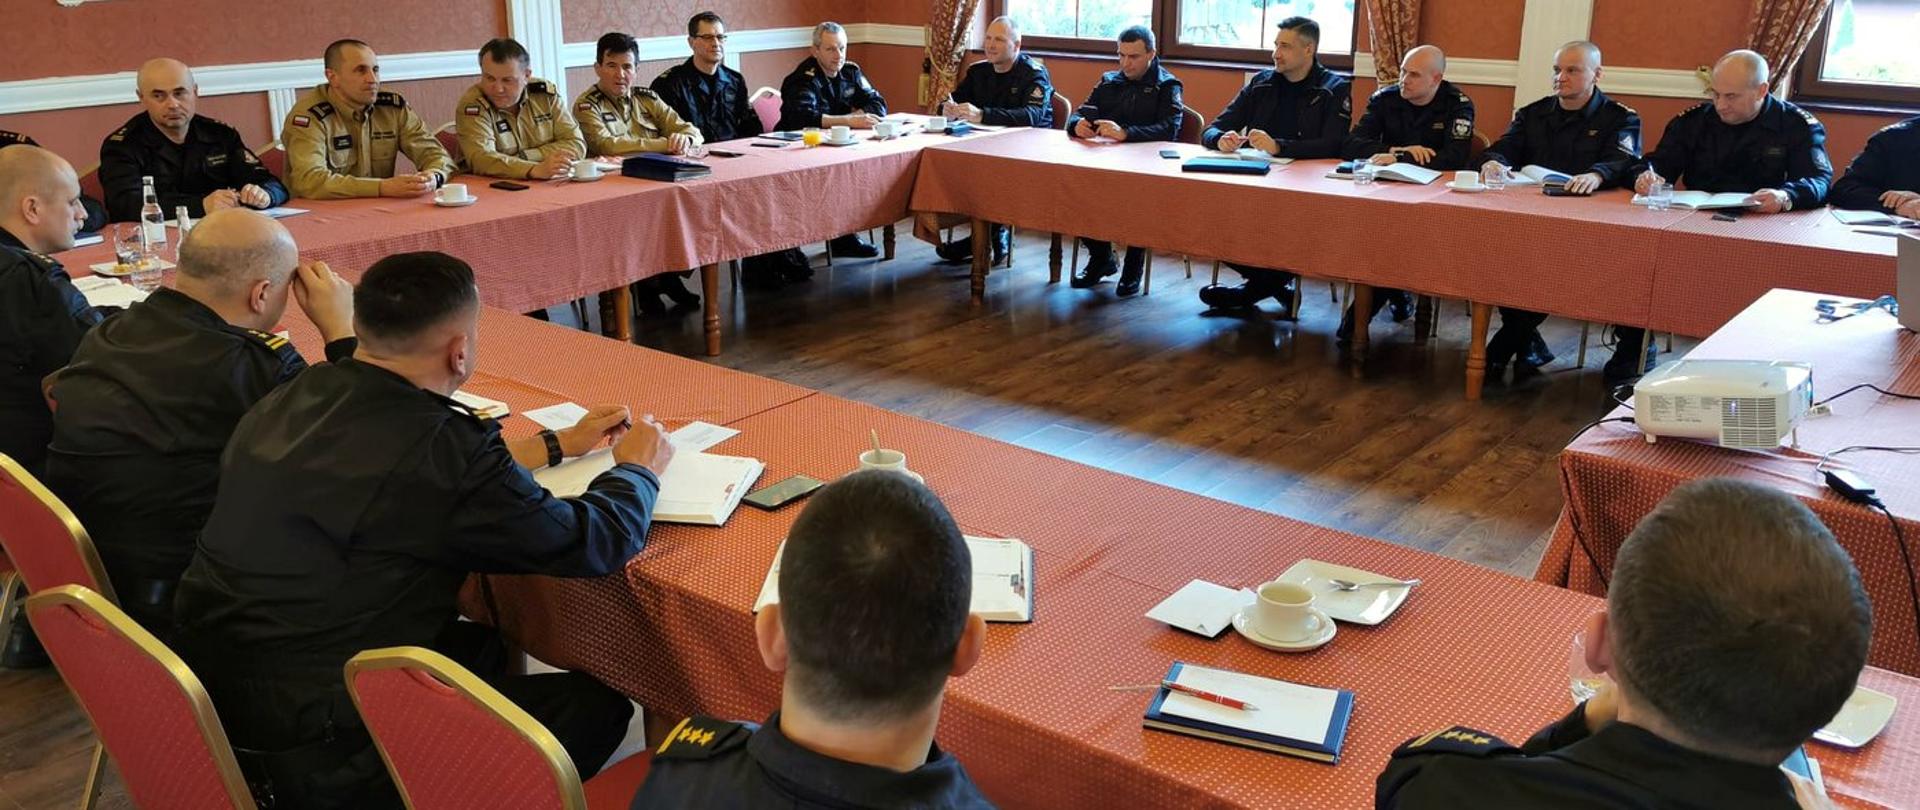 Zdjęcie zrobione w sali szkoleniowej. Przy stołach siedzą oficerowie Państwowej Straży Pożarnej uczestniczący w naradzie. Strażacy ubrani są mundury służbowe.
